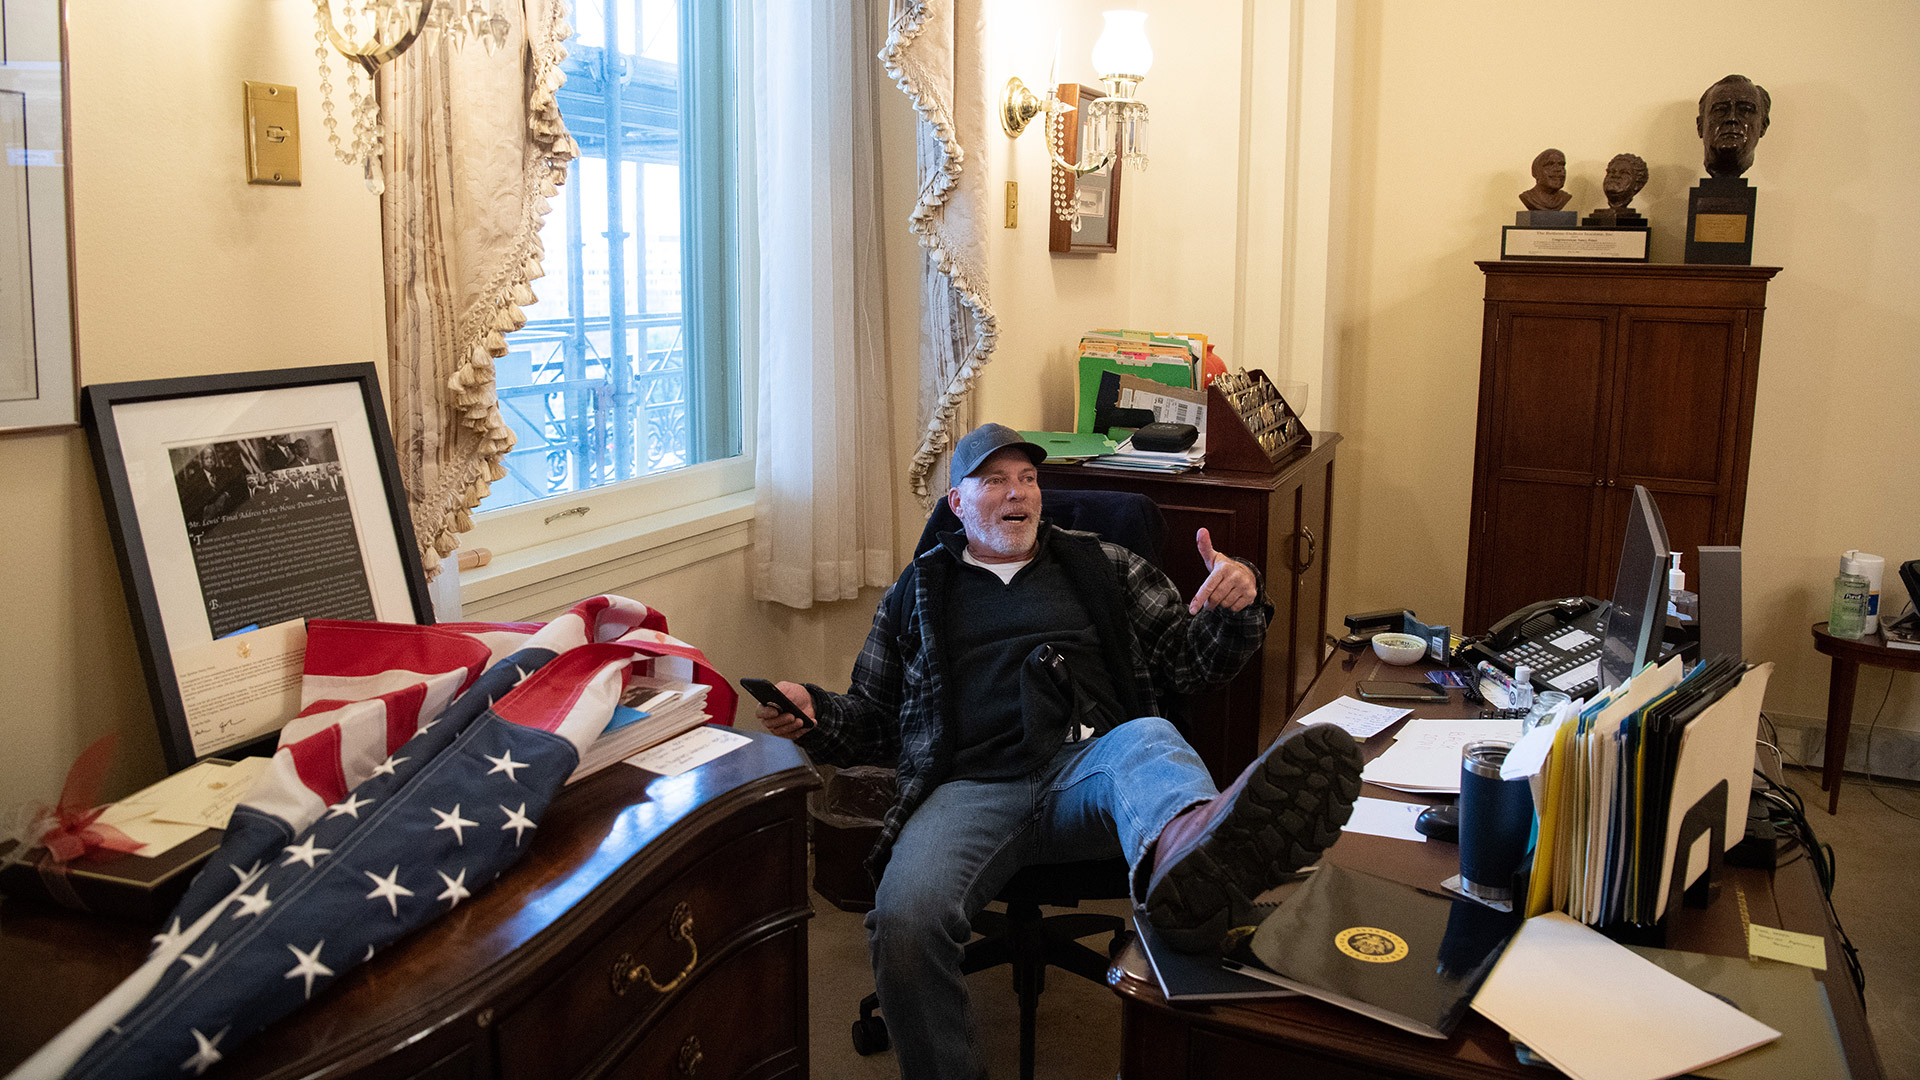 Richard Barnett, partidario del presidente Trump, ingresó a la fuerza a la oficina de la presidenta de la Cámara de Representantes de EEUU, Nancy Pelosi, el 6 de enero de 2021 (Foto de SAUL LOEB / AFP)